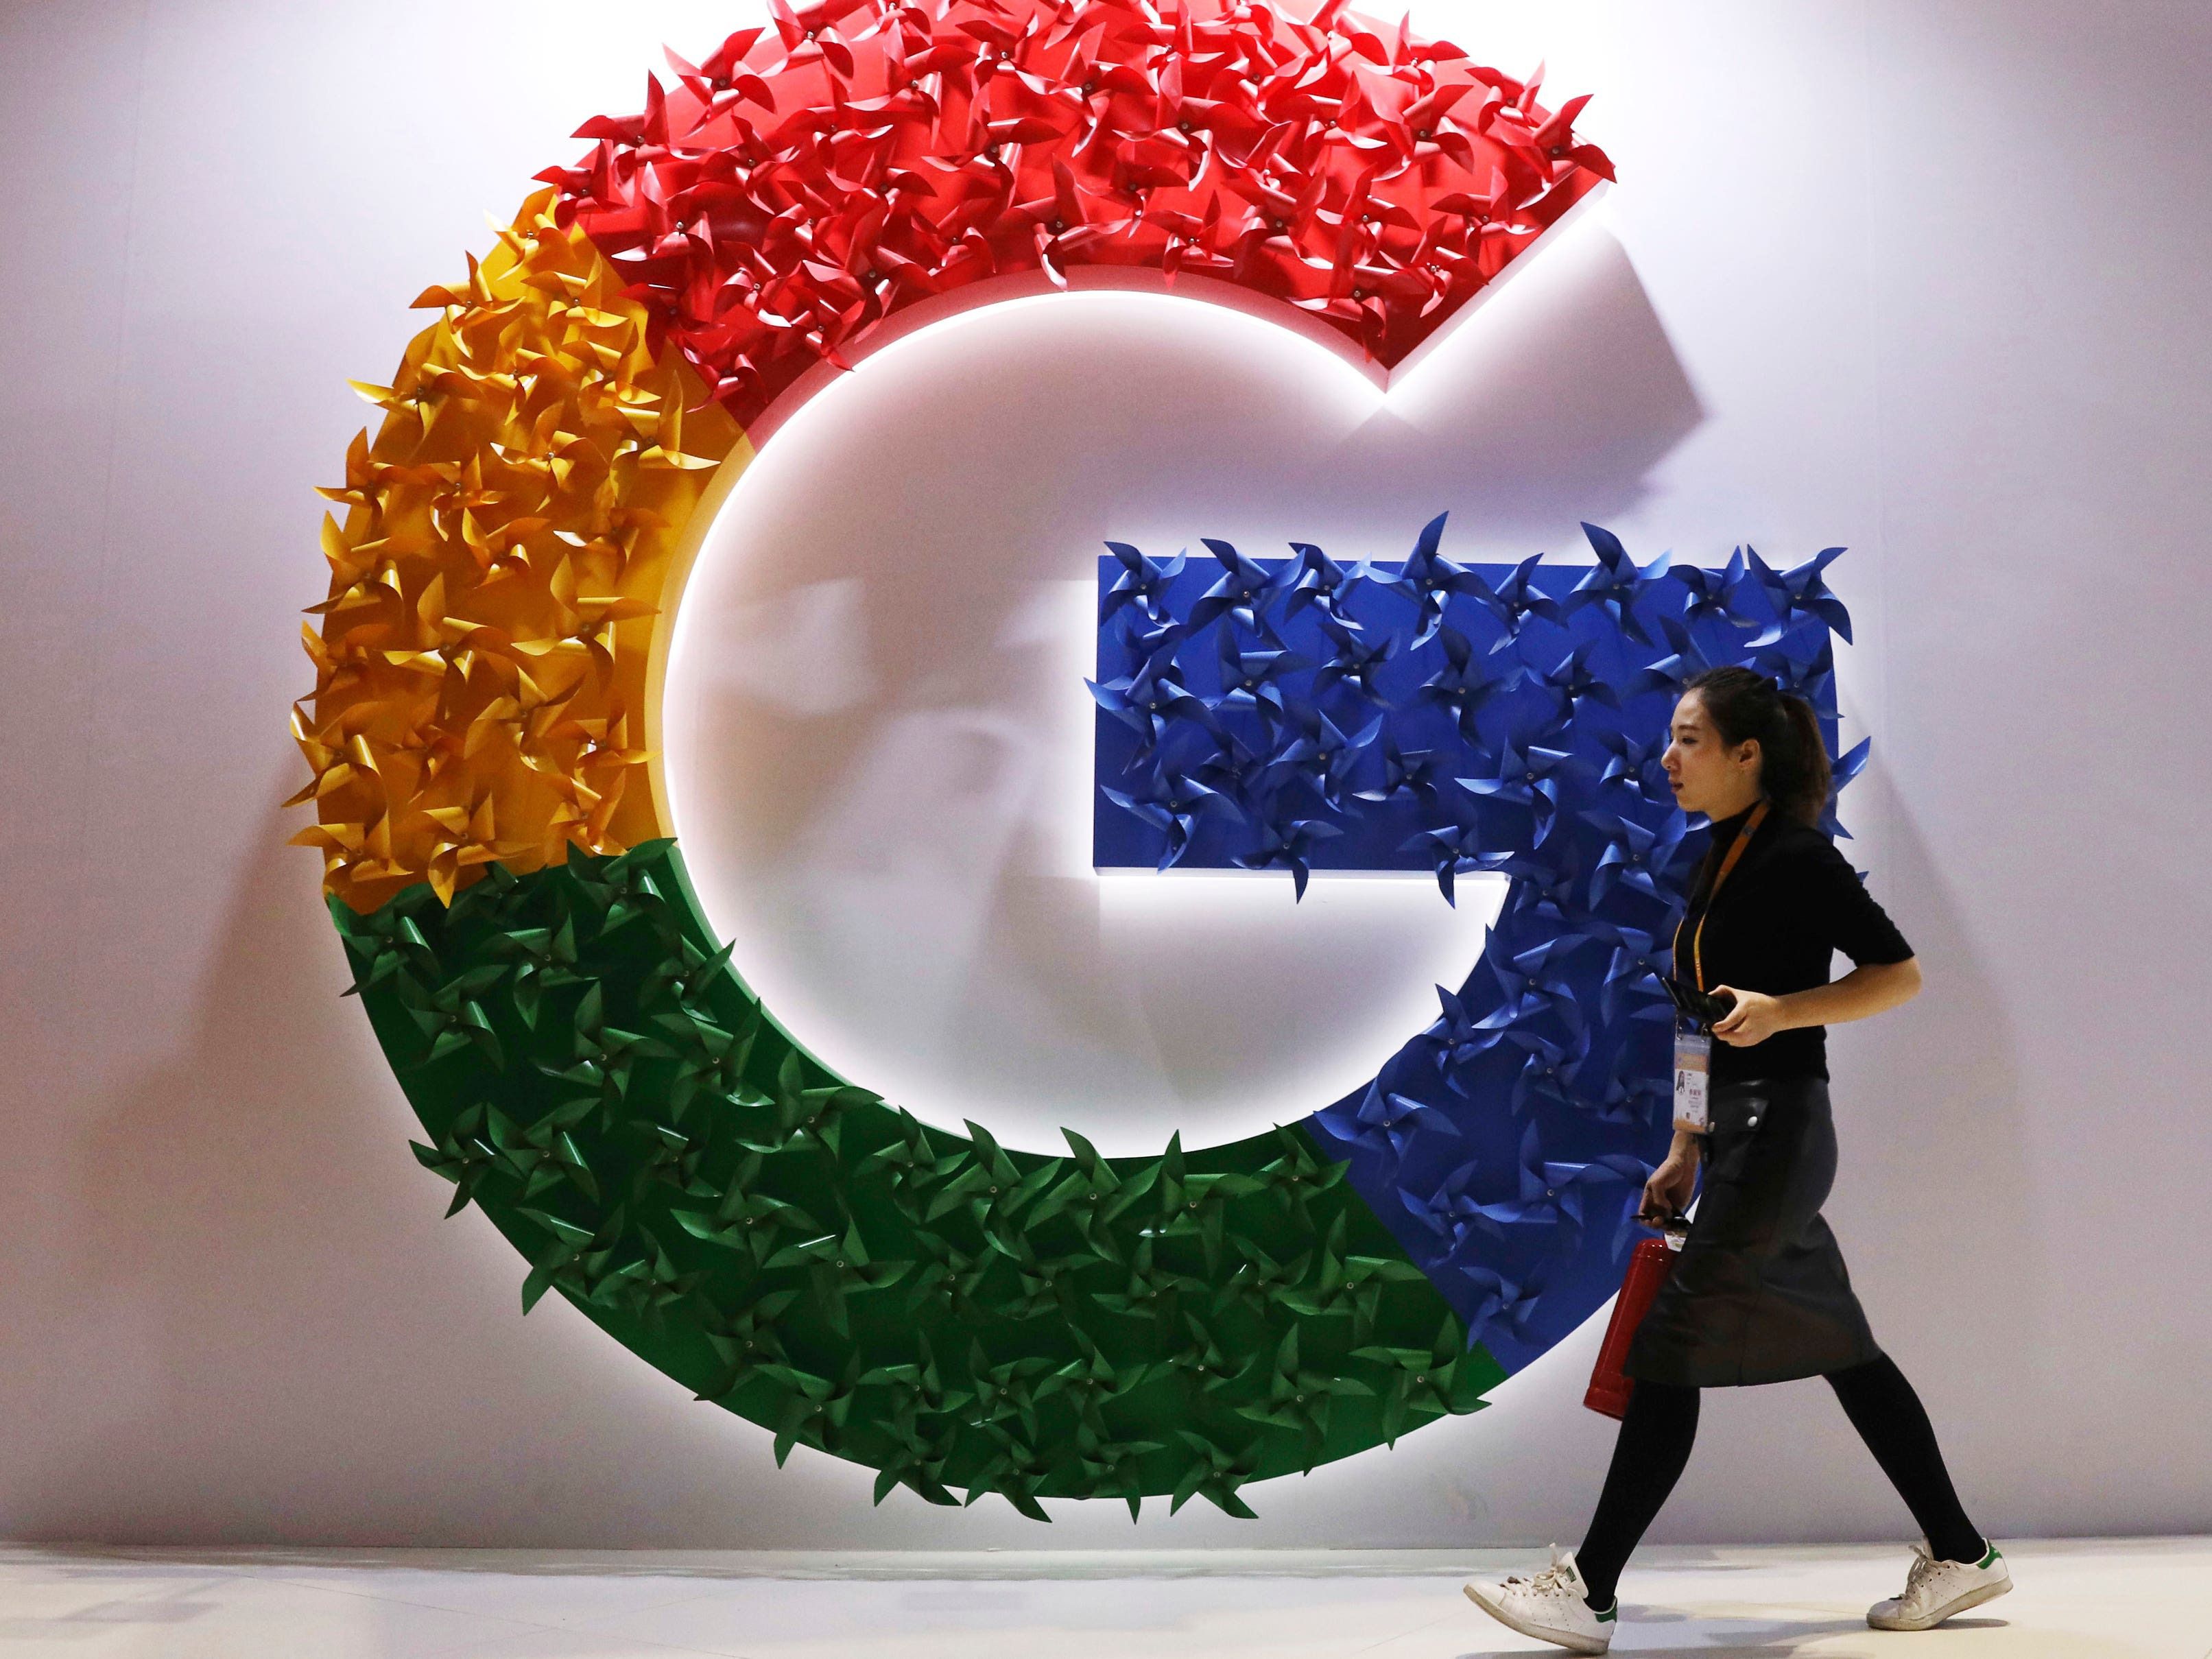 Google loses massive antitrust case over search dominance